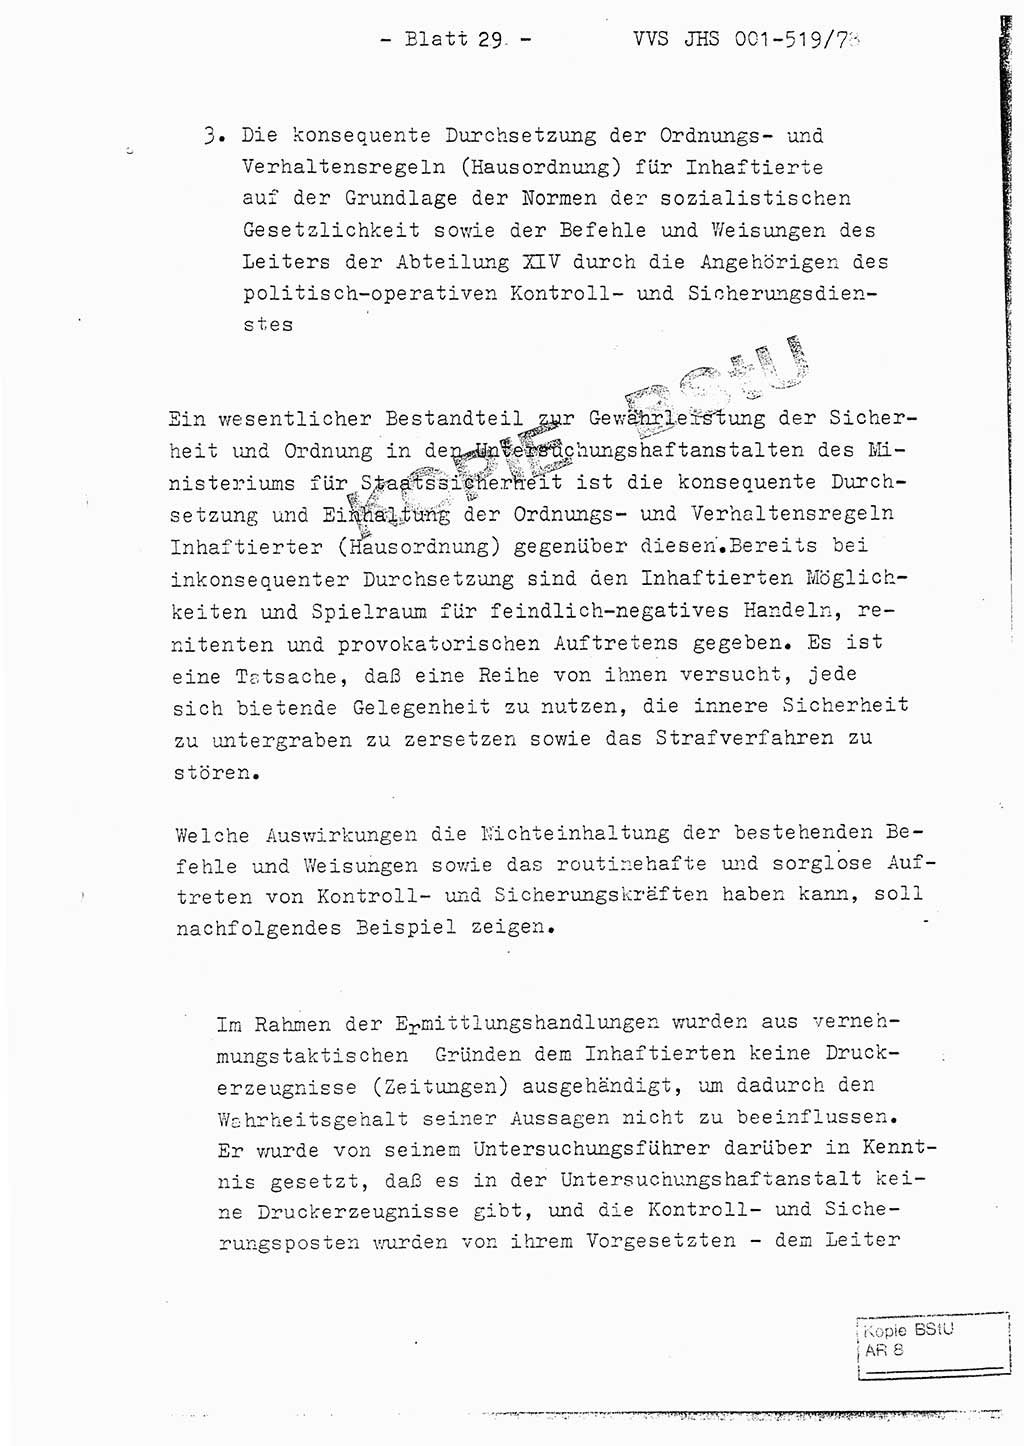 Fachschulabschlußarbeit Hauptmann Alfons Lützelberger (Abt. ⅩⅣ), Ministerium für Staatssicherheit (MfS) [Deutsche Demokratische Republik (DDR)], Juristische Hochschule (JHS), Vertrauliche Verschlußsache (VVS) 001-519/78, Potsdam 1978, Blatt 29 (FS-Abschl.-Arb. MfS DDR JHS VVS 001-519/78 1978, Bl. 29)